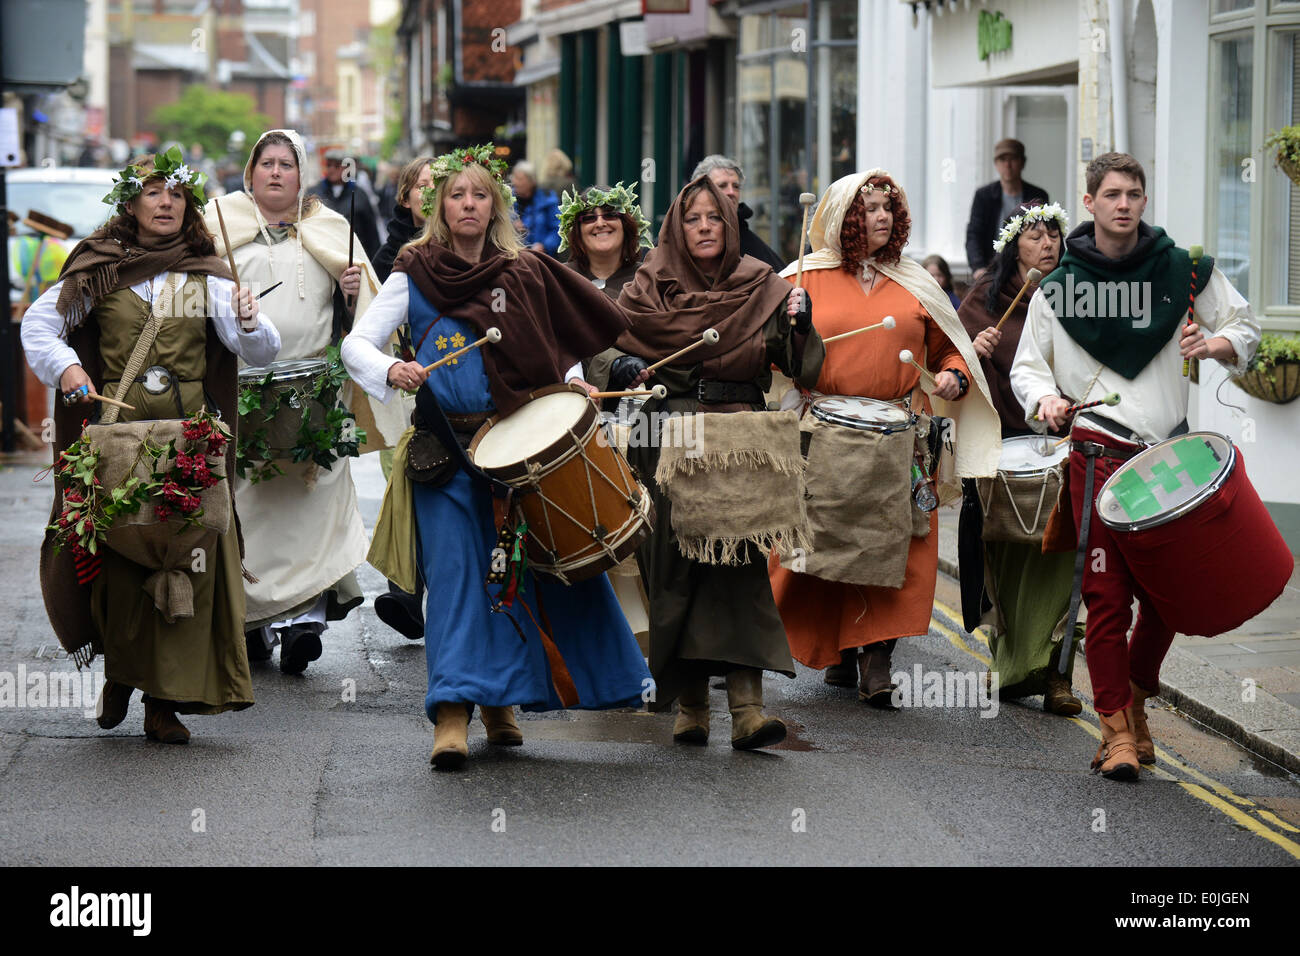 Un gruppo di persone vestite con costumi e celebra la battaglia di Lewes di Lewes High Street, East Sussex, Regno Unito. Foto Stock